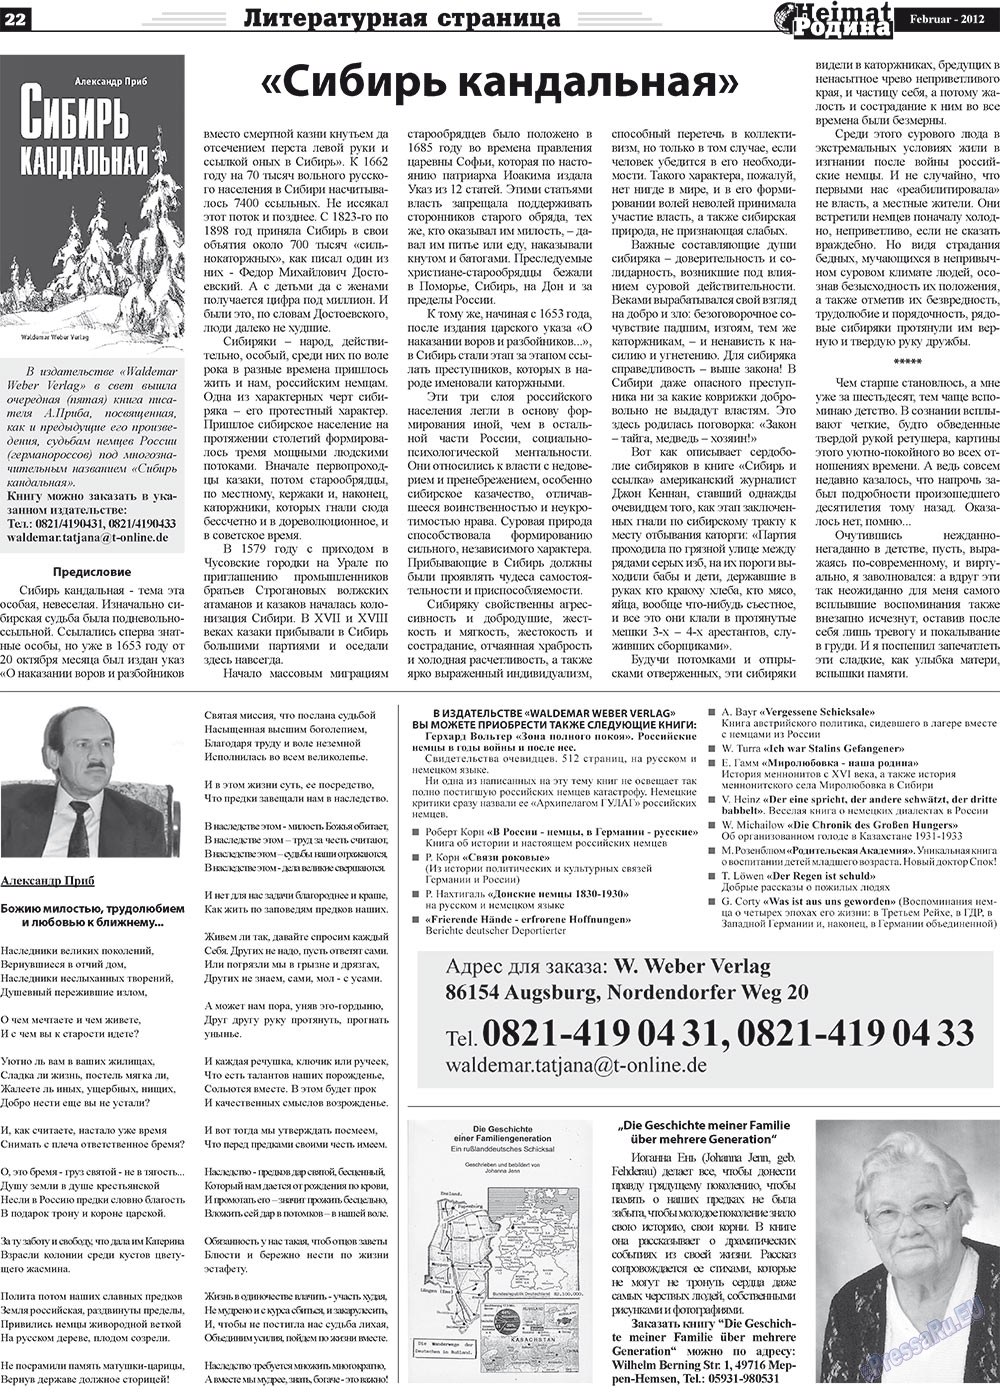 Heimat-Родина (газета). 2012 год, номер 2, стр. 22